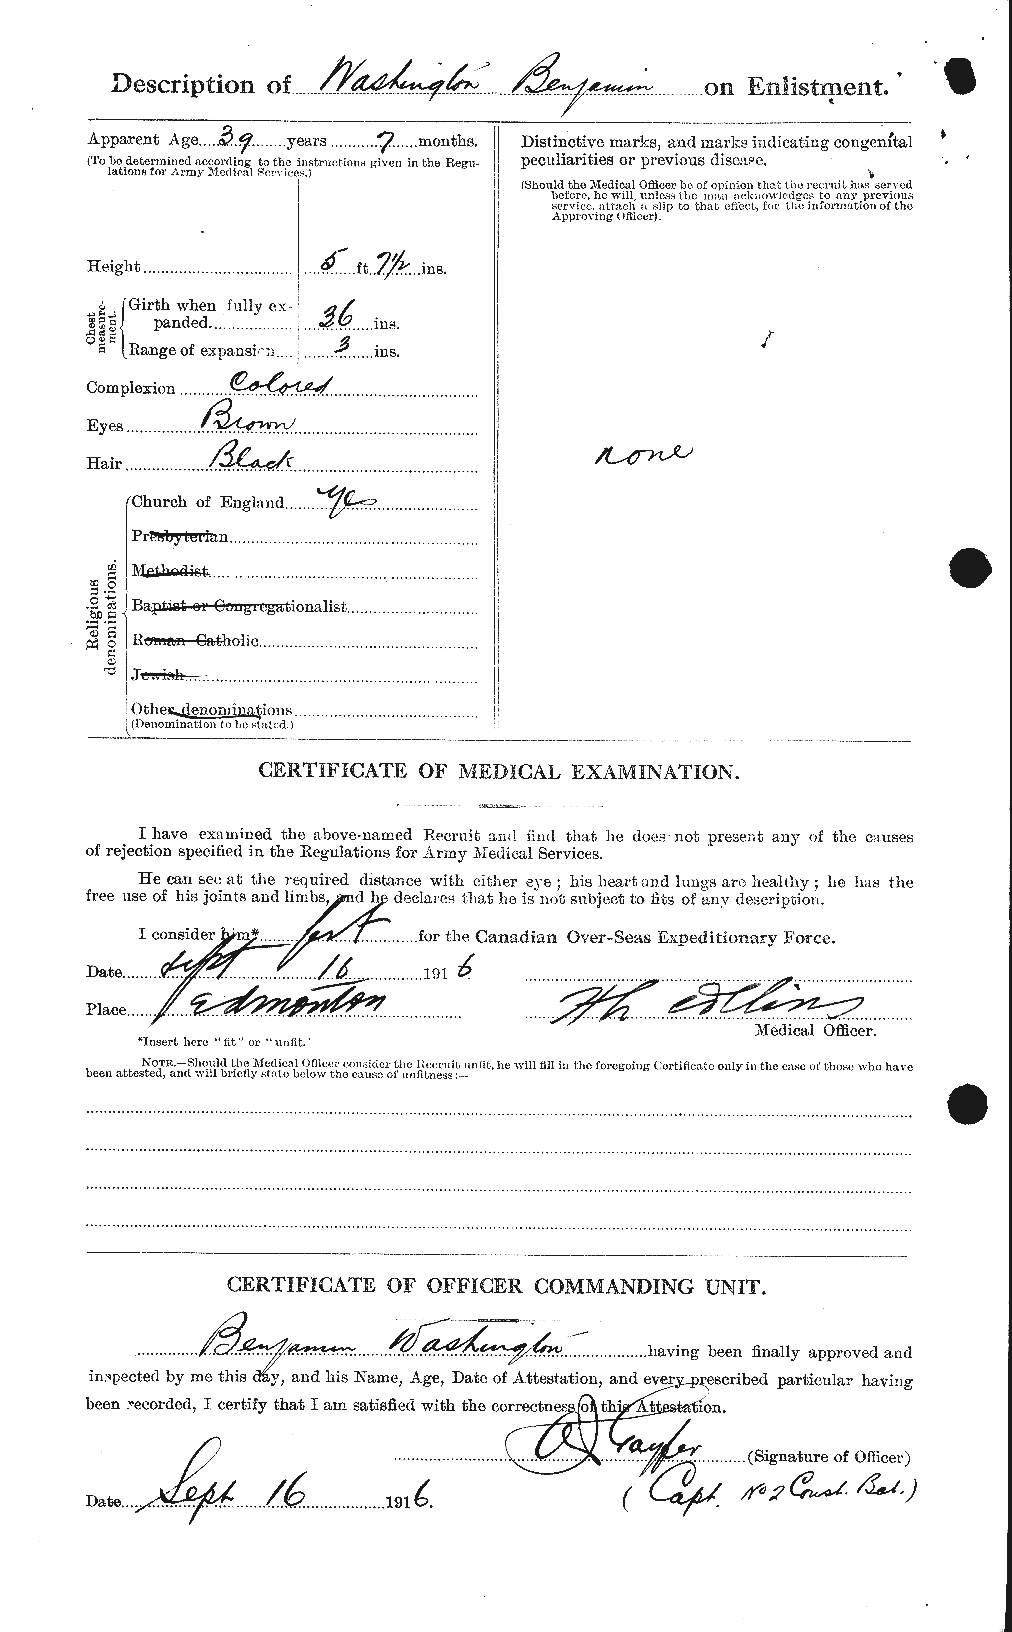 Dossiers du Personnel de la Première Guerre mondiale - CEC 657091b